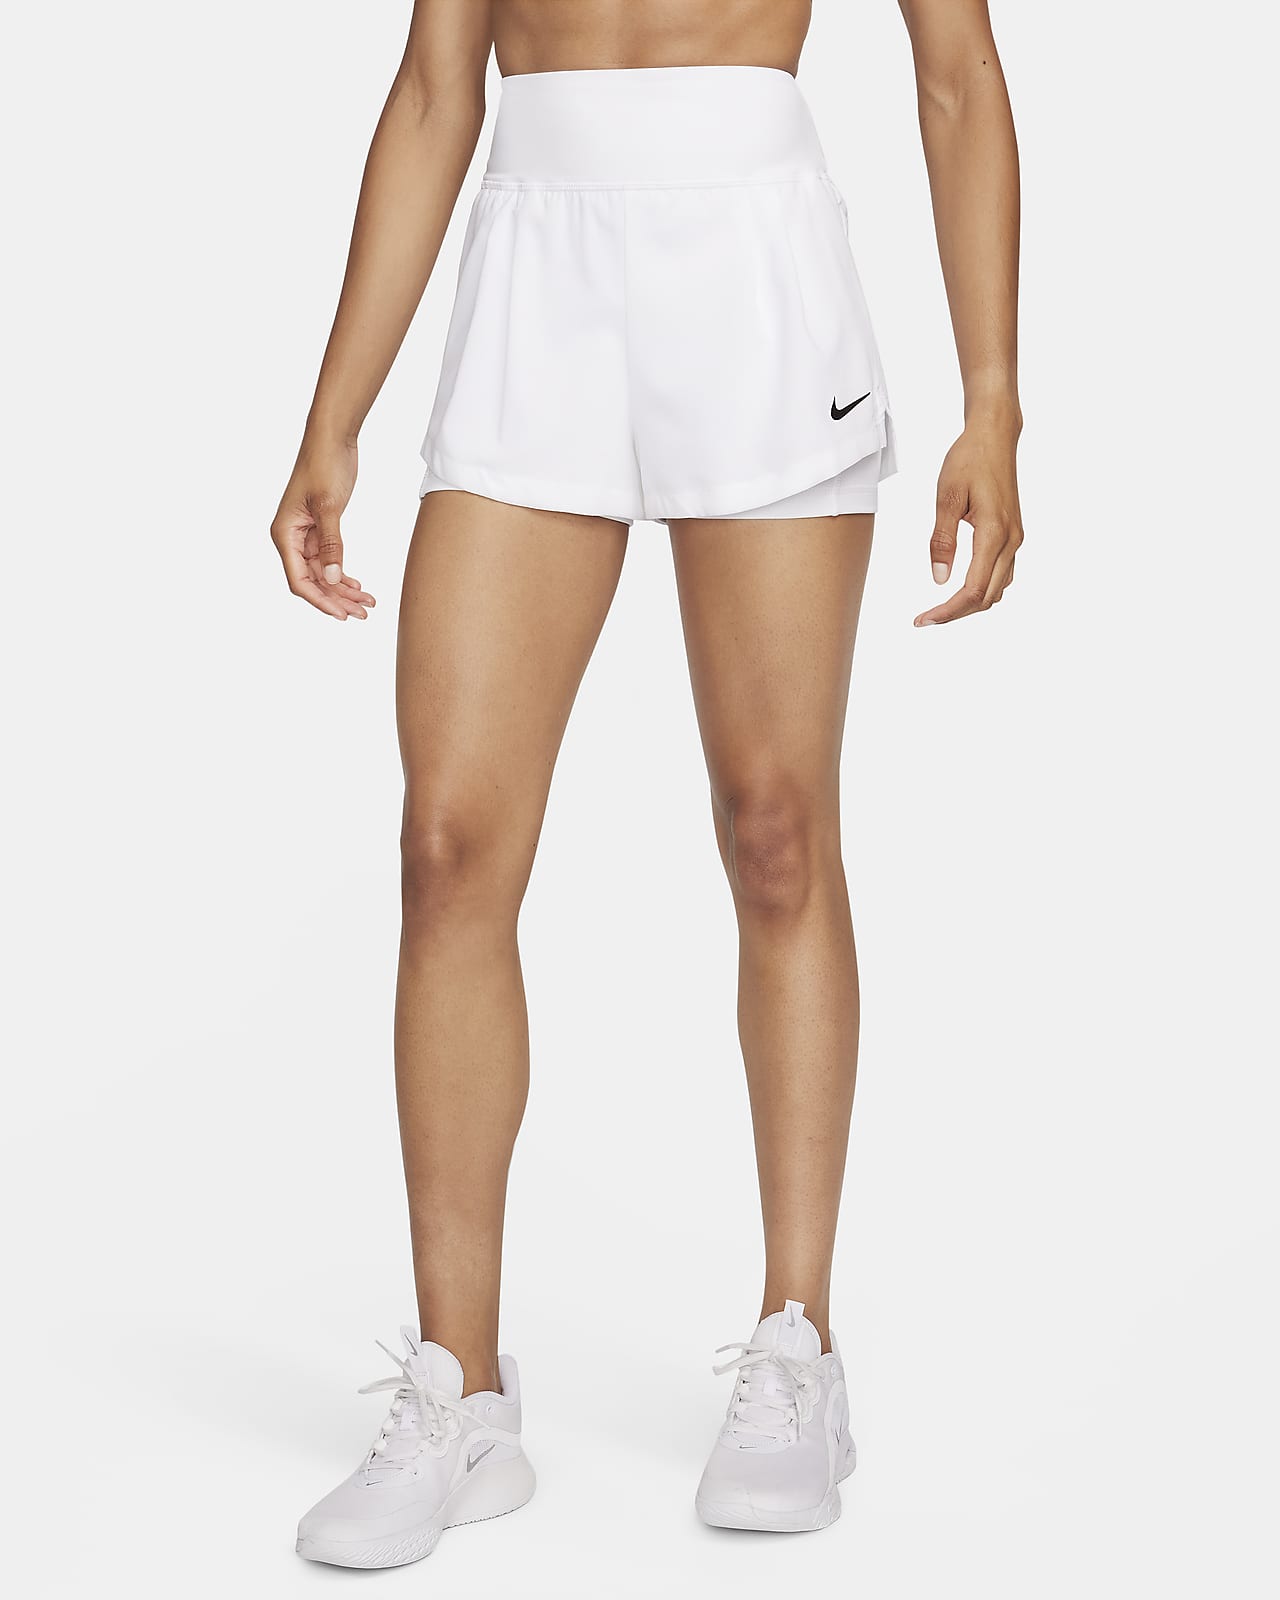 Calções de ténis Dri-FIT NikeCourt Advantage para mulher